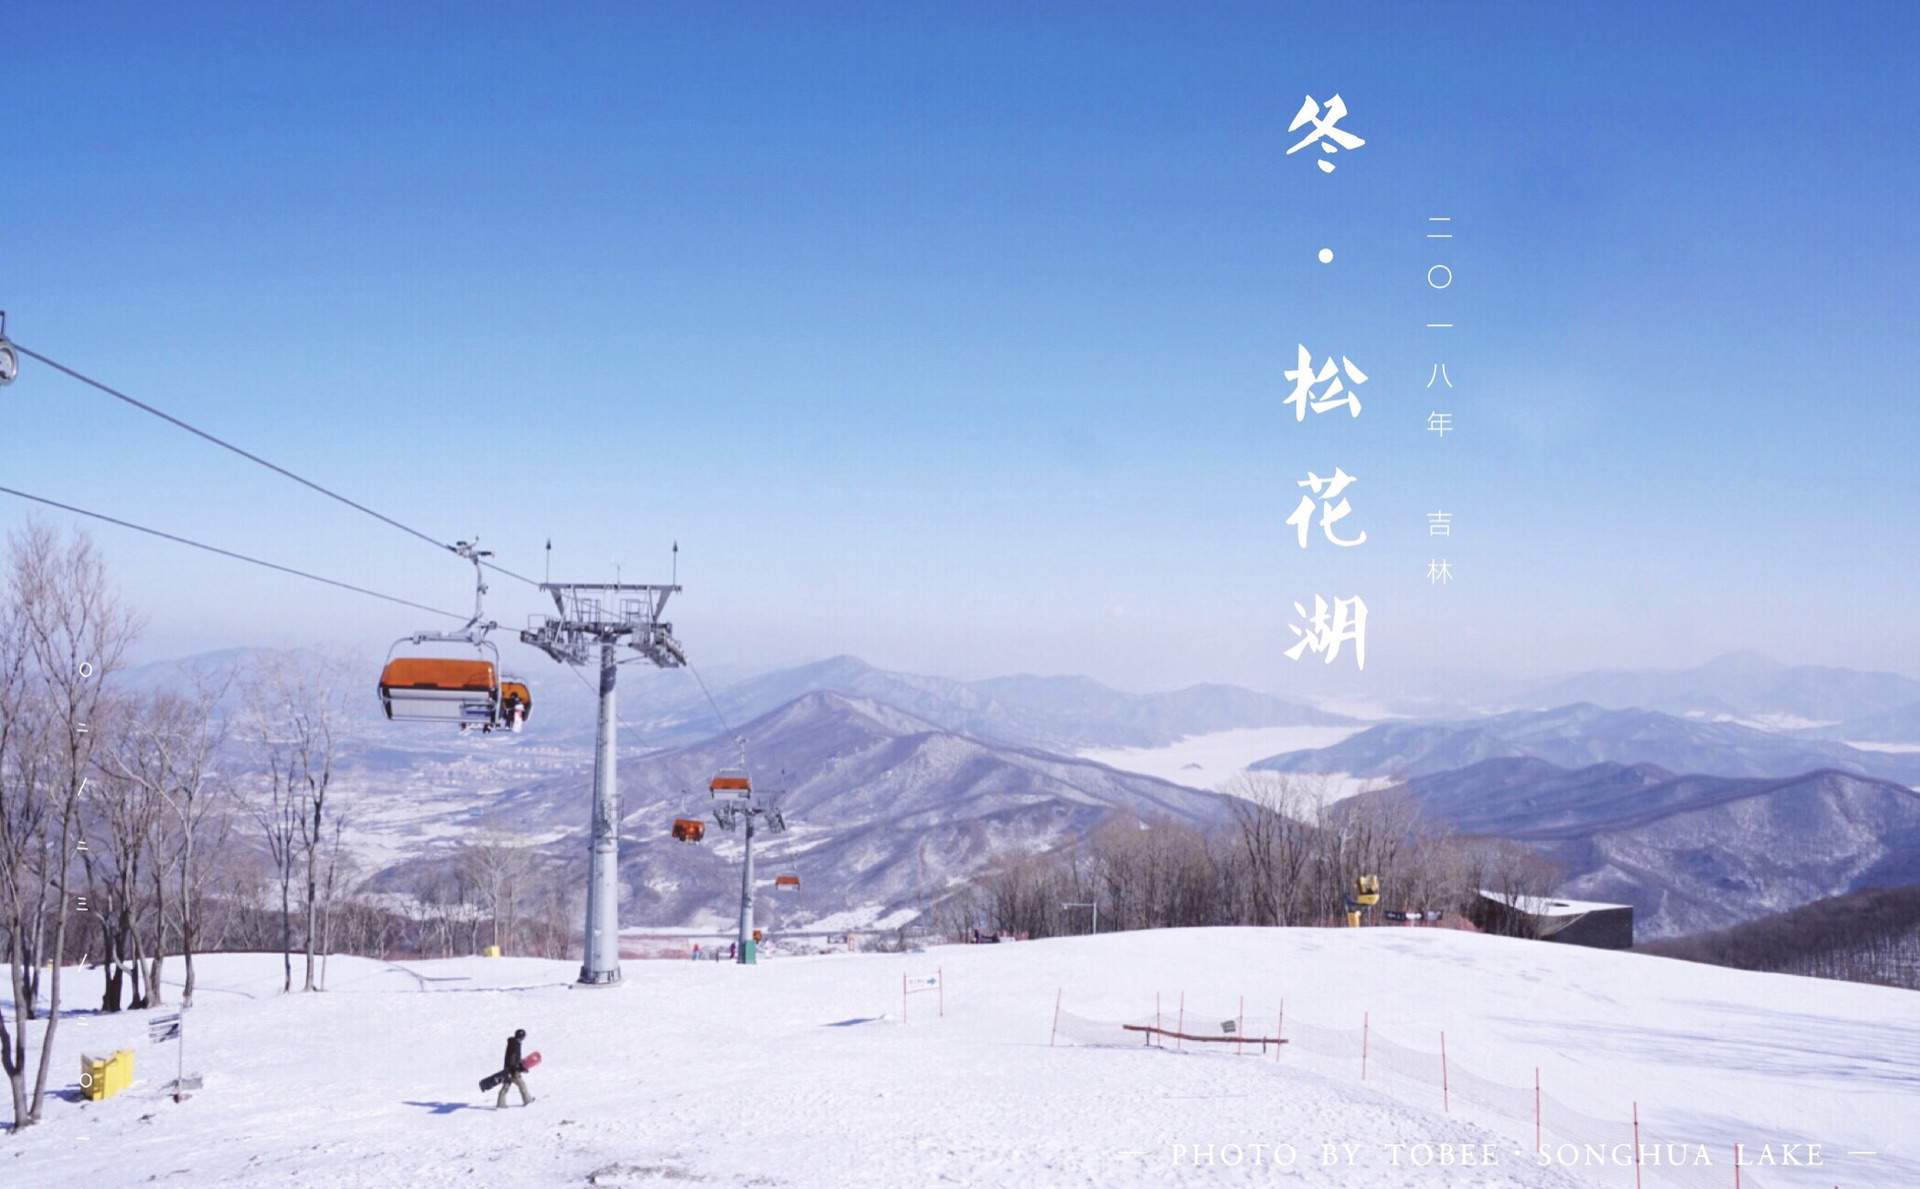 【滑雪】吉林松花湖 克服恐惧,勇往直前